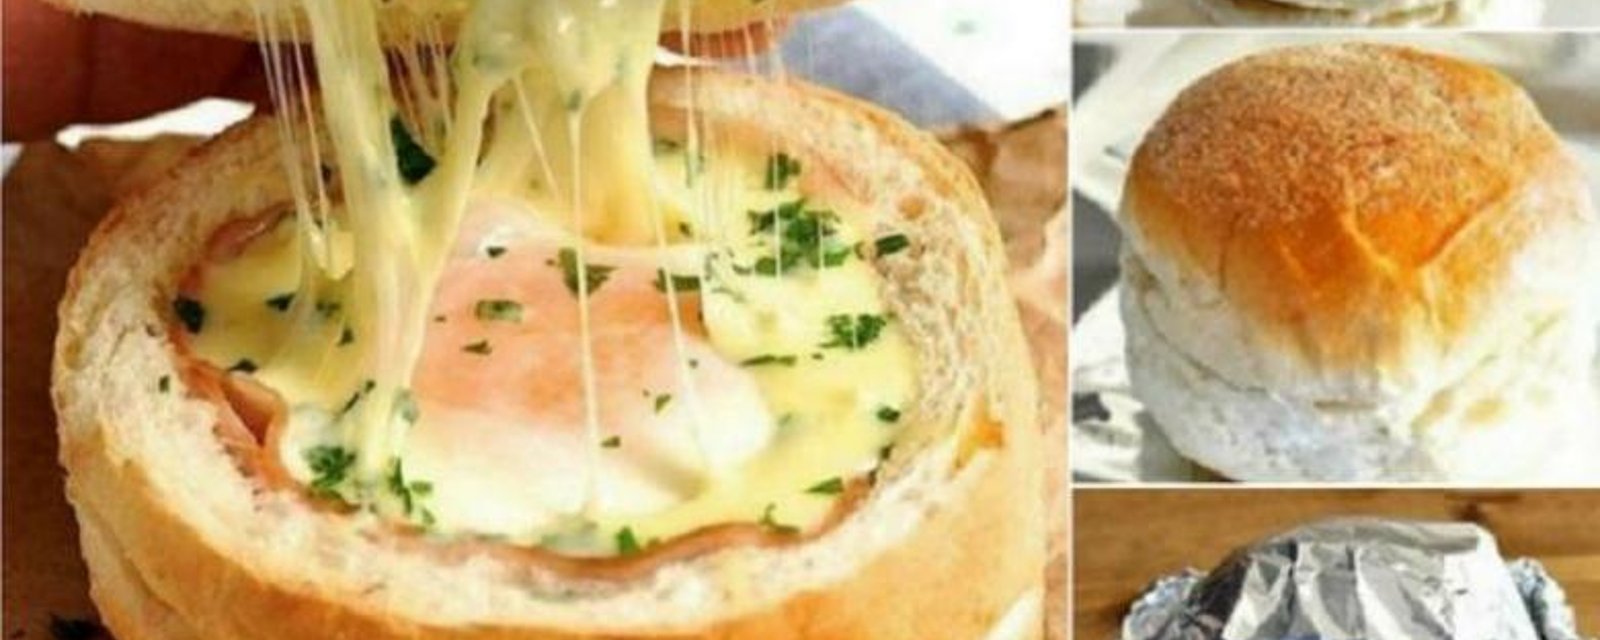 Le sandwich! Oeuf jambon formage dans un bol fait d'un pain!